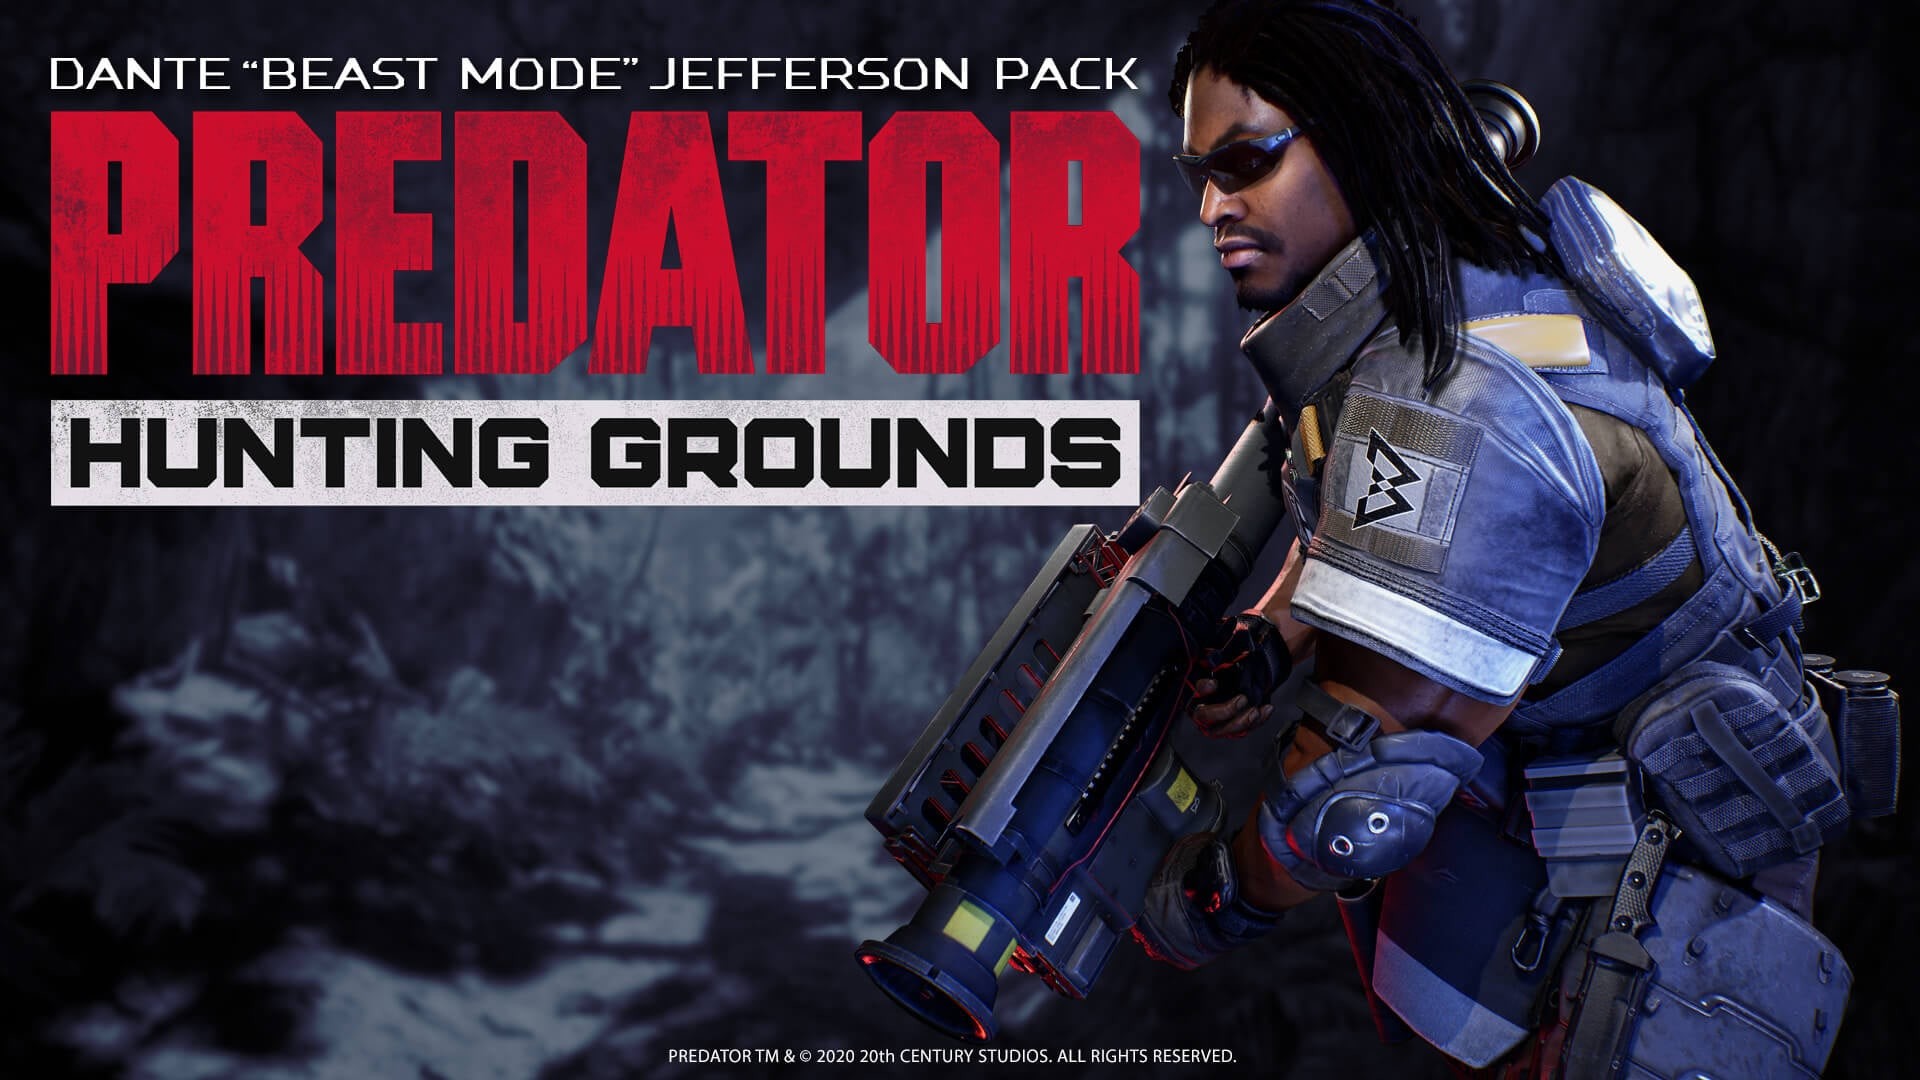 Predator: Hunting Grounds - Dante "Beast Mode" Jefferson DLC Pack Featured Screenshot #1